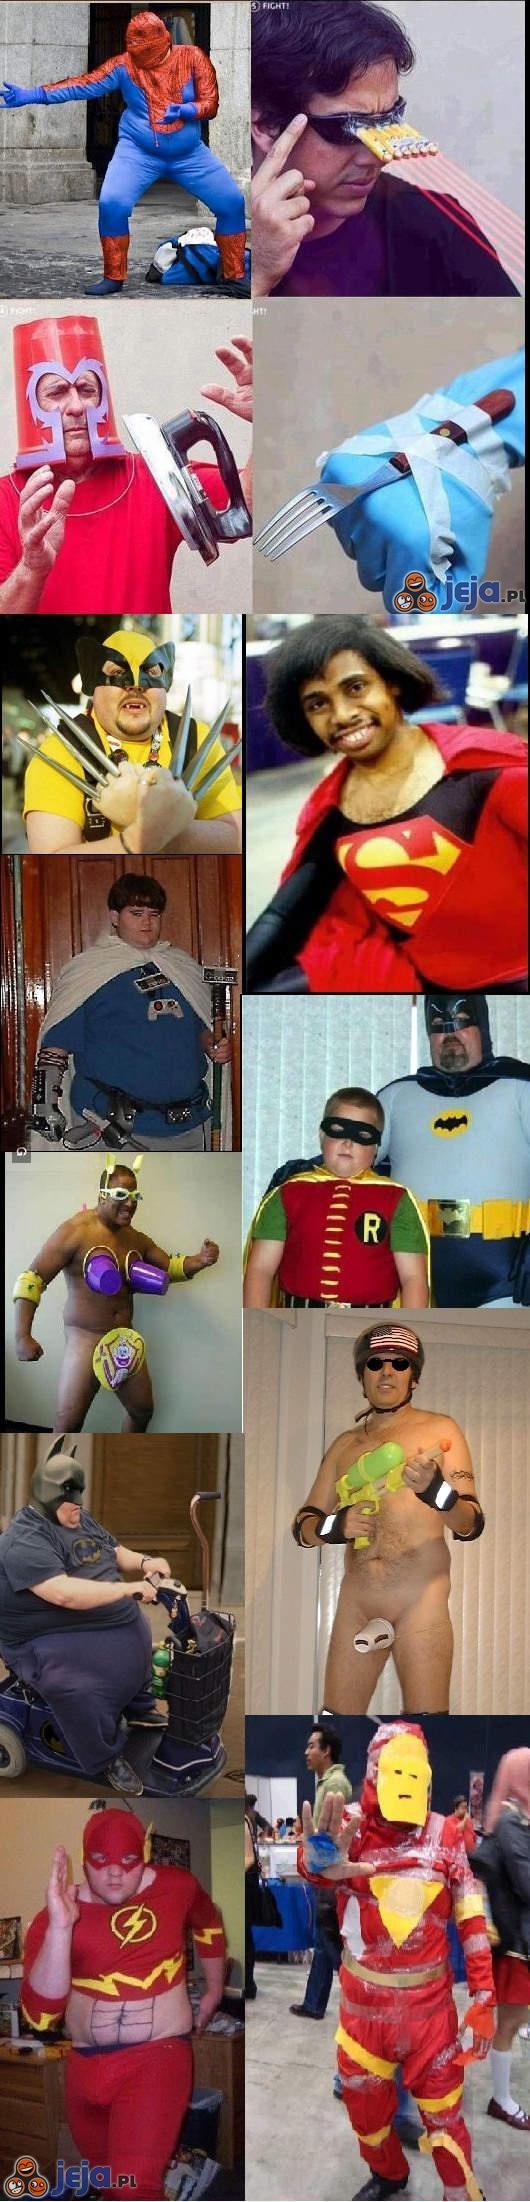 Superbohaterowie, którzy ochronią nasz świat